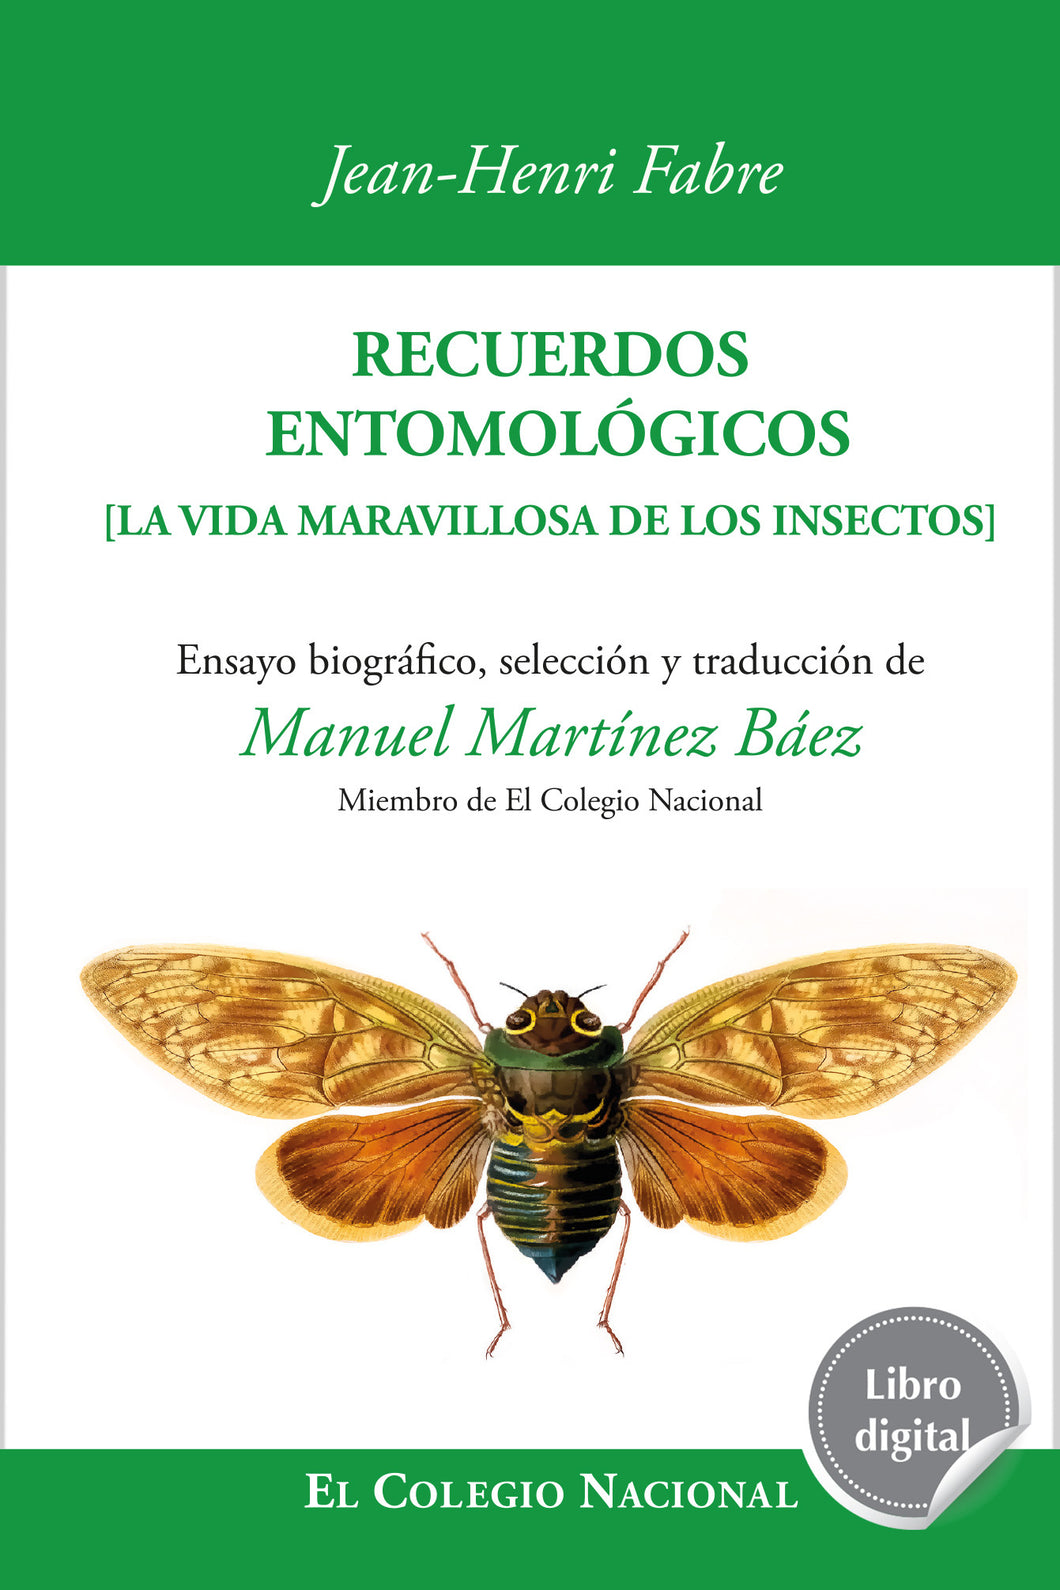 Recuerdos entomológicos. La vida maravillosa de los insectos de Jean-Henri Fabre, libro digital de El Colegio Nacional, Libros Colnal